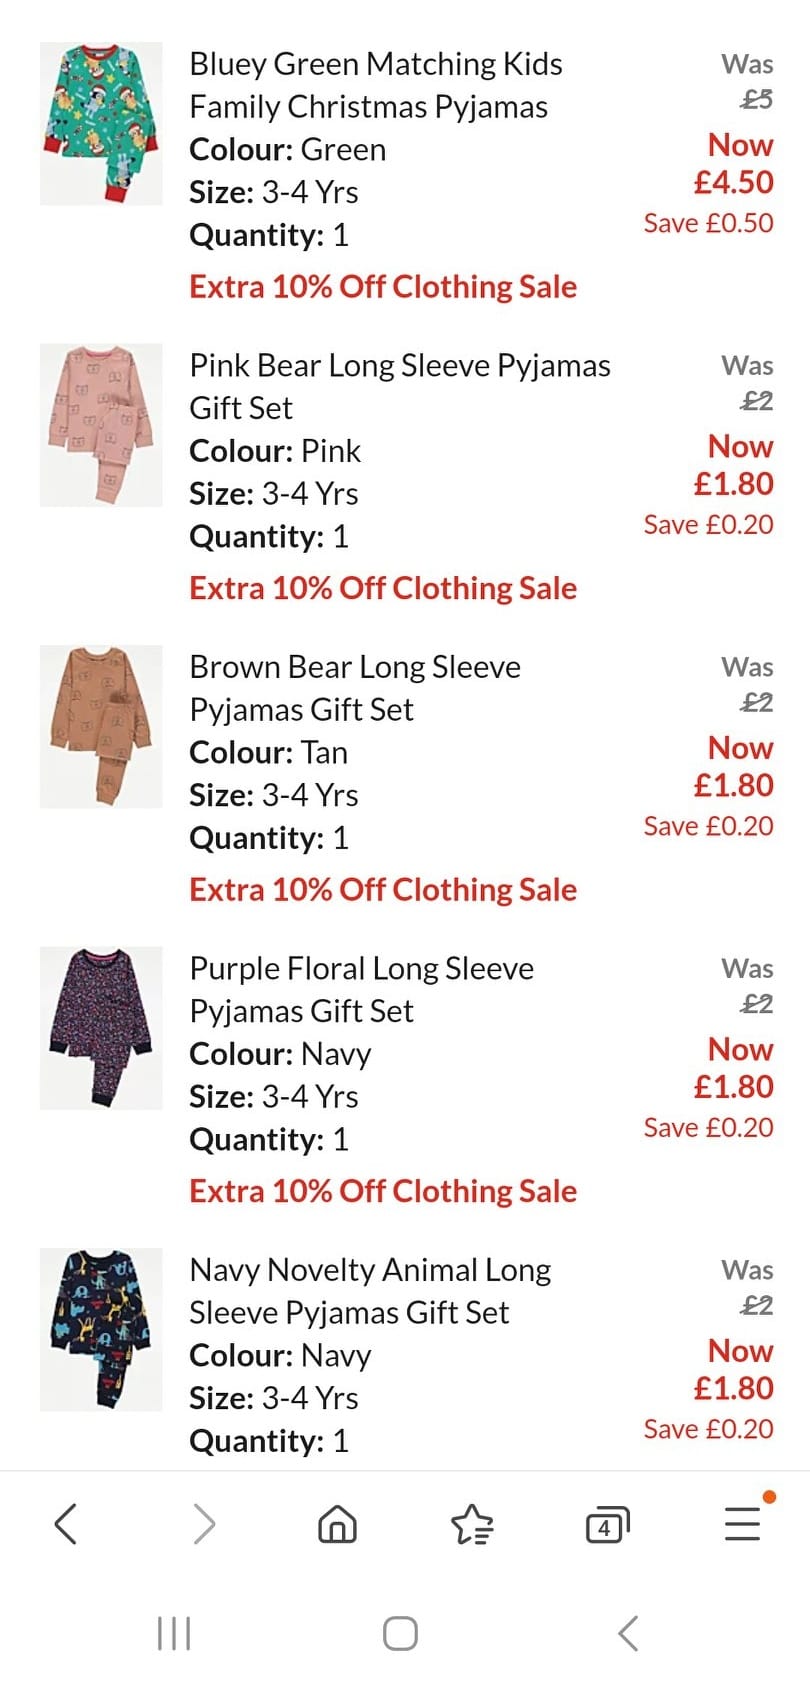 Viele Kleidungsstücke kosten mittlerweile nur noch 1,80 £